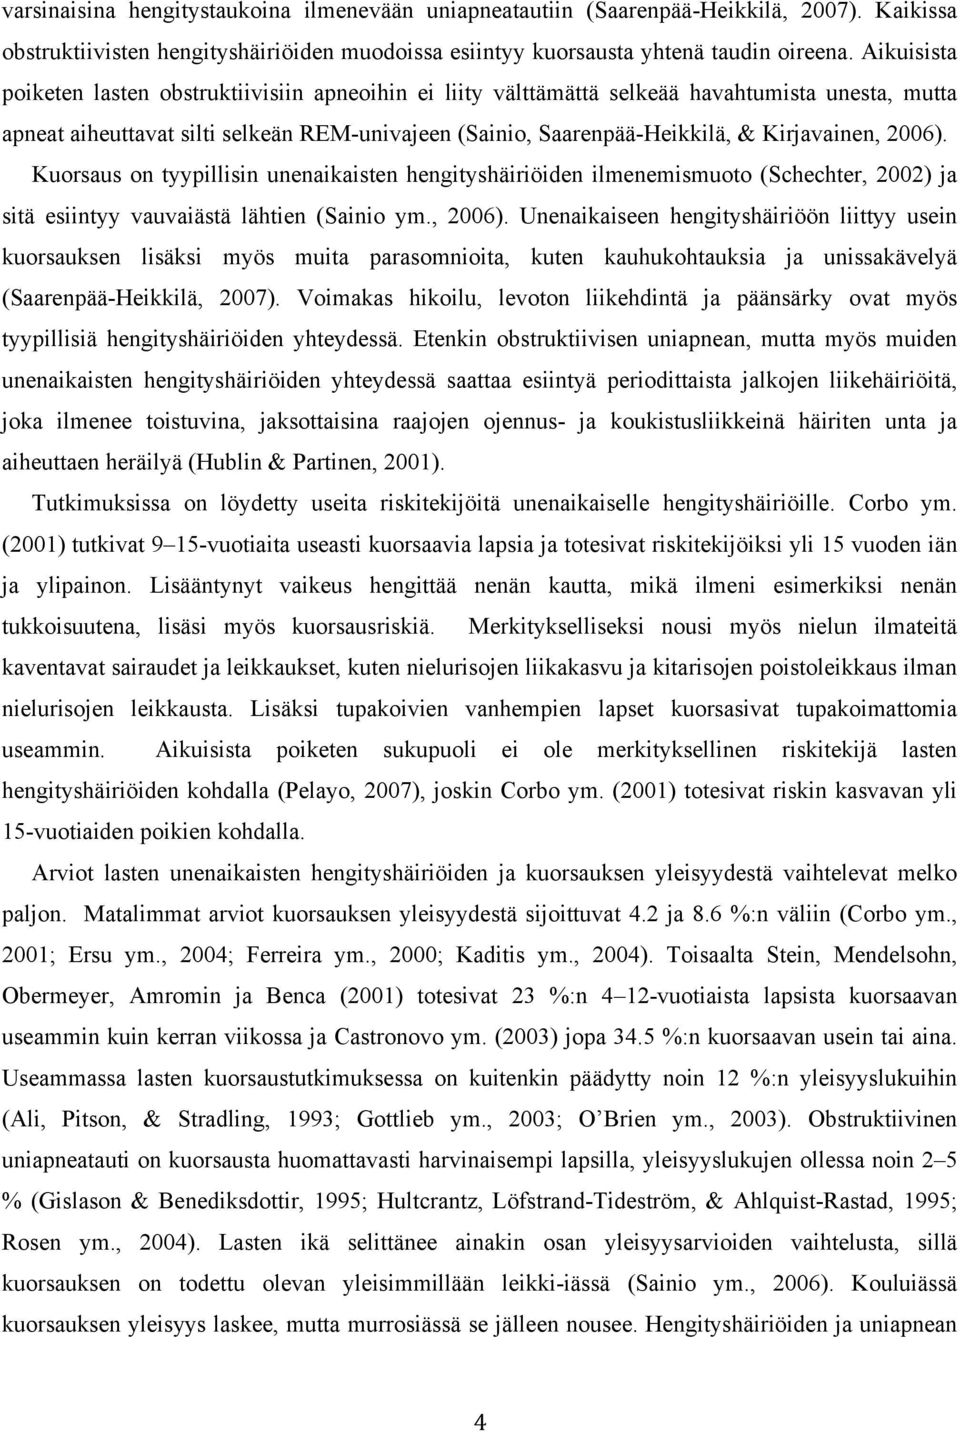 Kirjavainen, 2006). Kuorsaus on tyypillisin unenaikaisten hengityshäiriöiden ilmenemismuoto (Schechter, 2002) ja sitä esiintyy vauvaiästä lähtien (Sainio ym., 2006). Unenaikaiseen hengityshäiriöön liittyy usein kuorsauksen lisäksi myös muita parasomnioita, kuten kauhukohtauksia ja unissakävelyä (Saarenpää-Heikkilä, 2007).